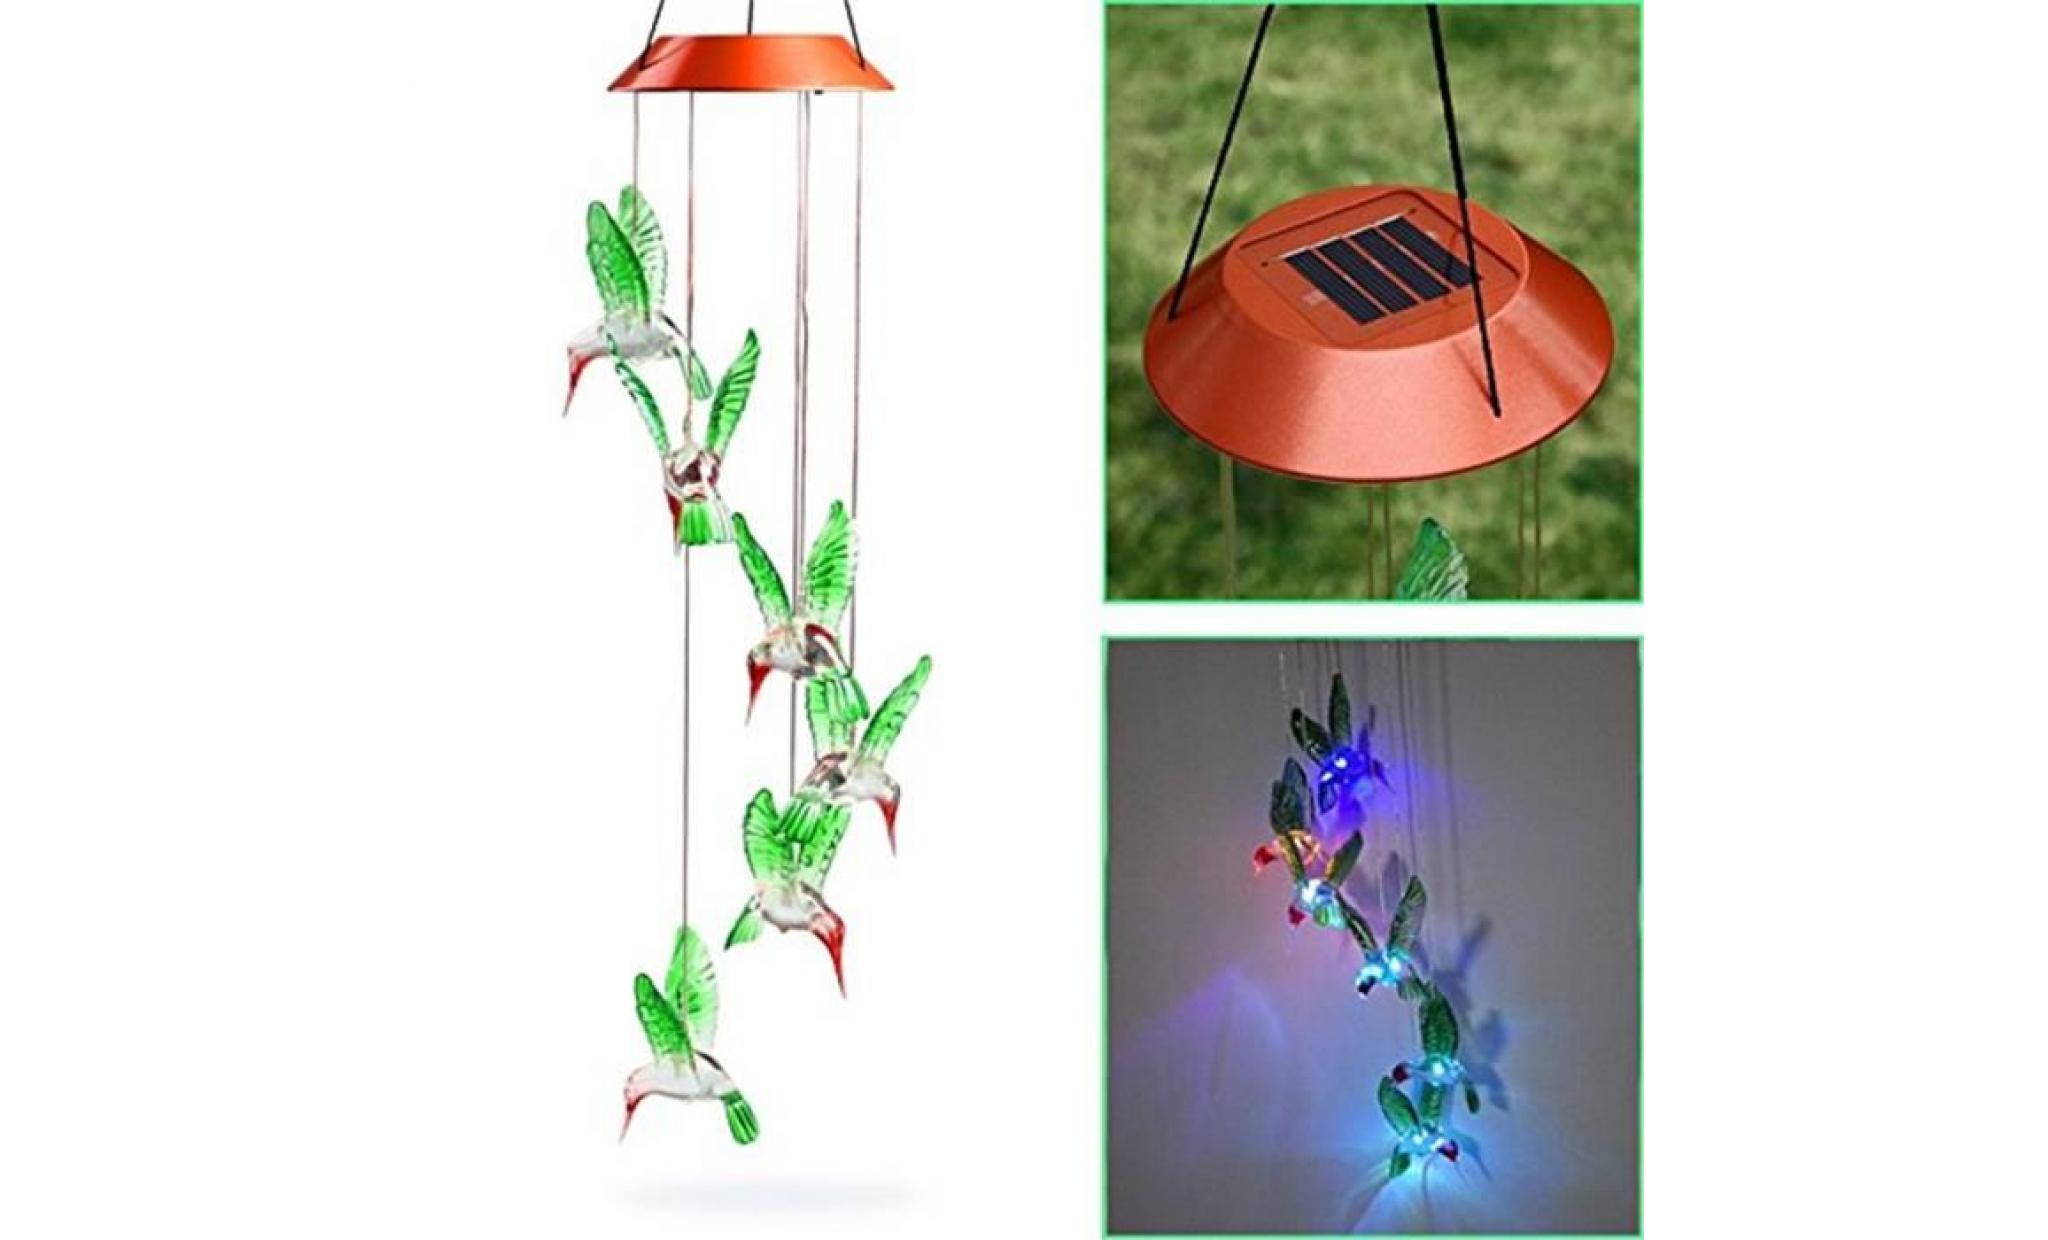 borne solaire vent changeant de colibri de vent solaire de carillon de vent de led pour l'éclairage de jardinage #pa 225